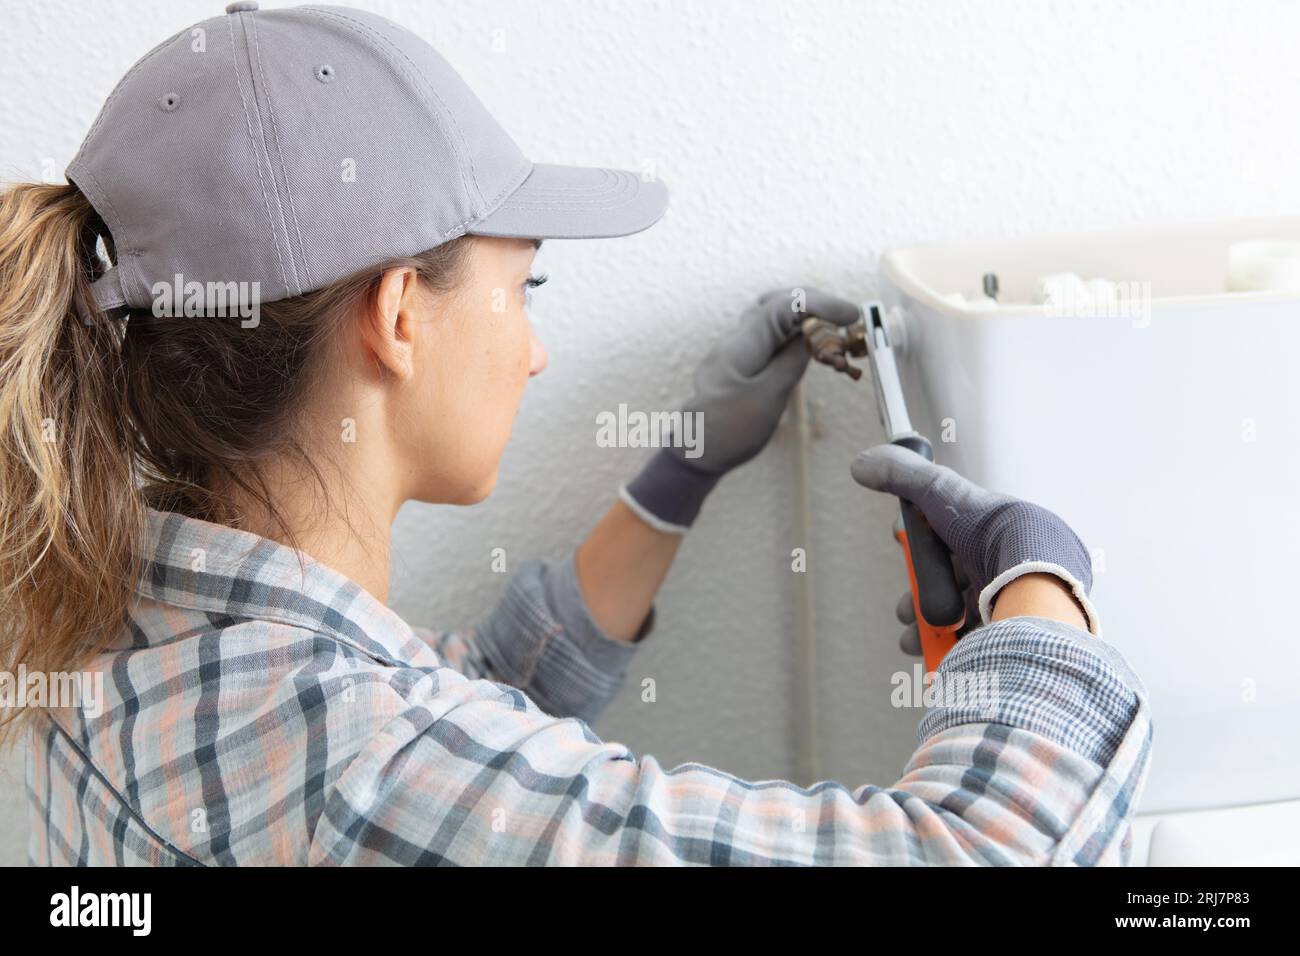 female plumber repairing toilet flush Stock Photo